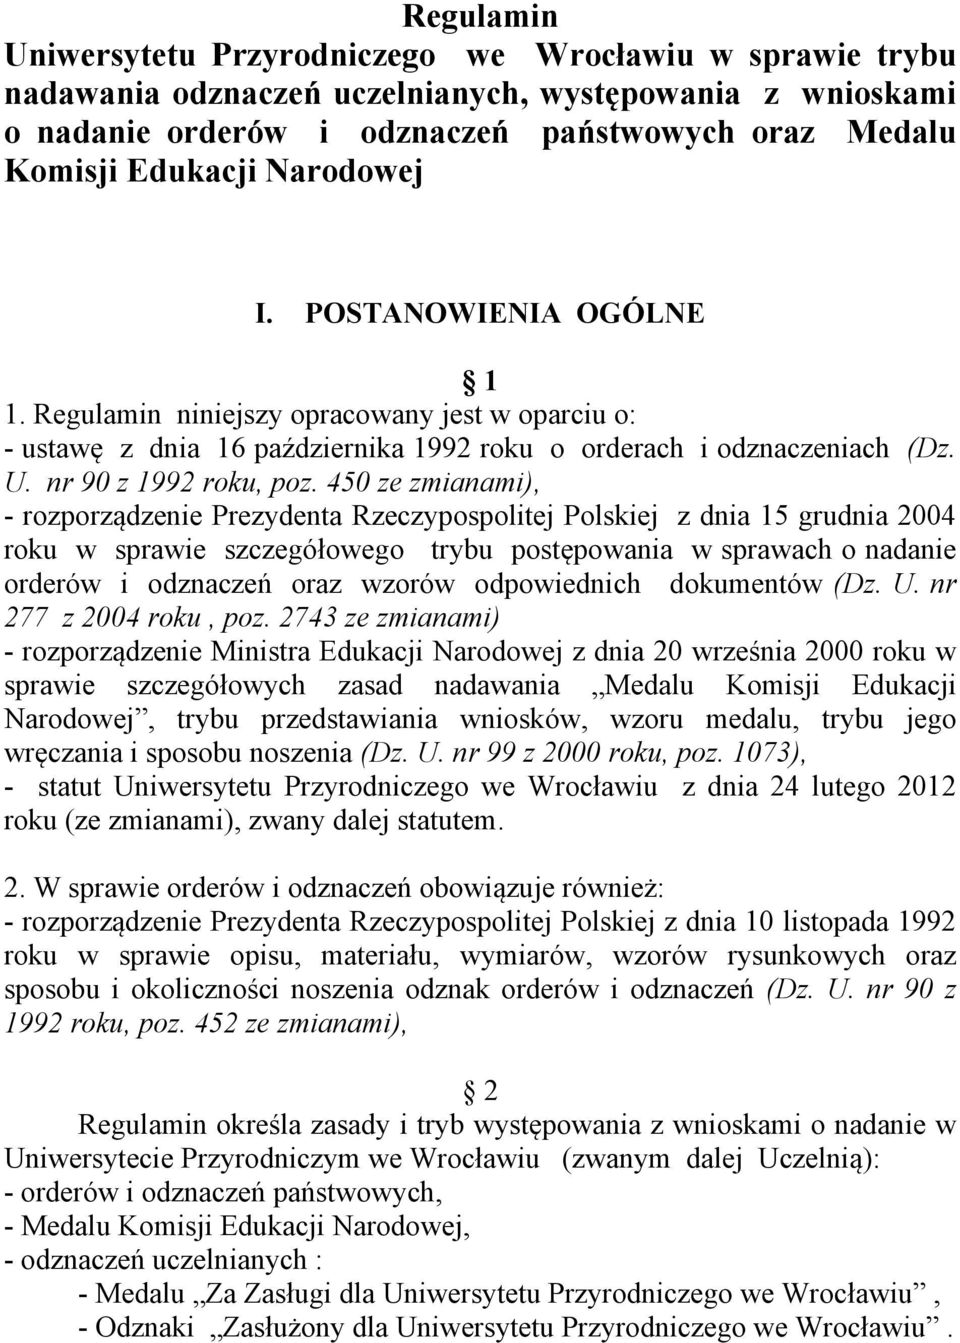 450 ze zmianami), - rozporządzenie Prezydenta Rzeczypospolitej Polskiej z dnia 15 grudnia 2004 roku w sprawie szczegółowego trybu postępowania w sprawach o nadanie orderów i odznaczeń oraz wzorów